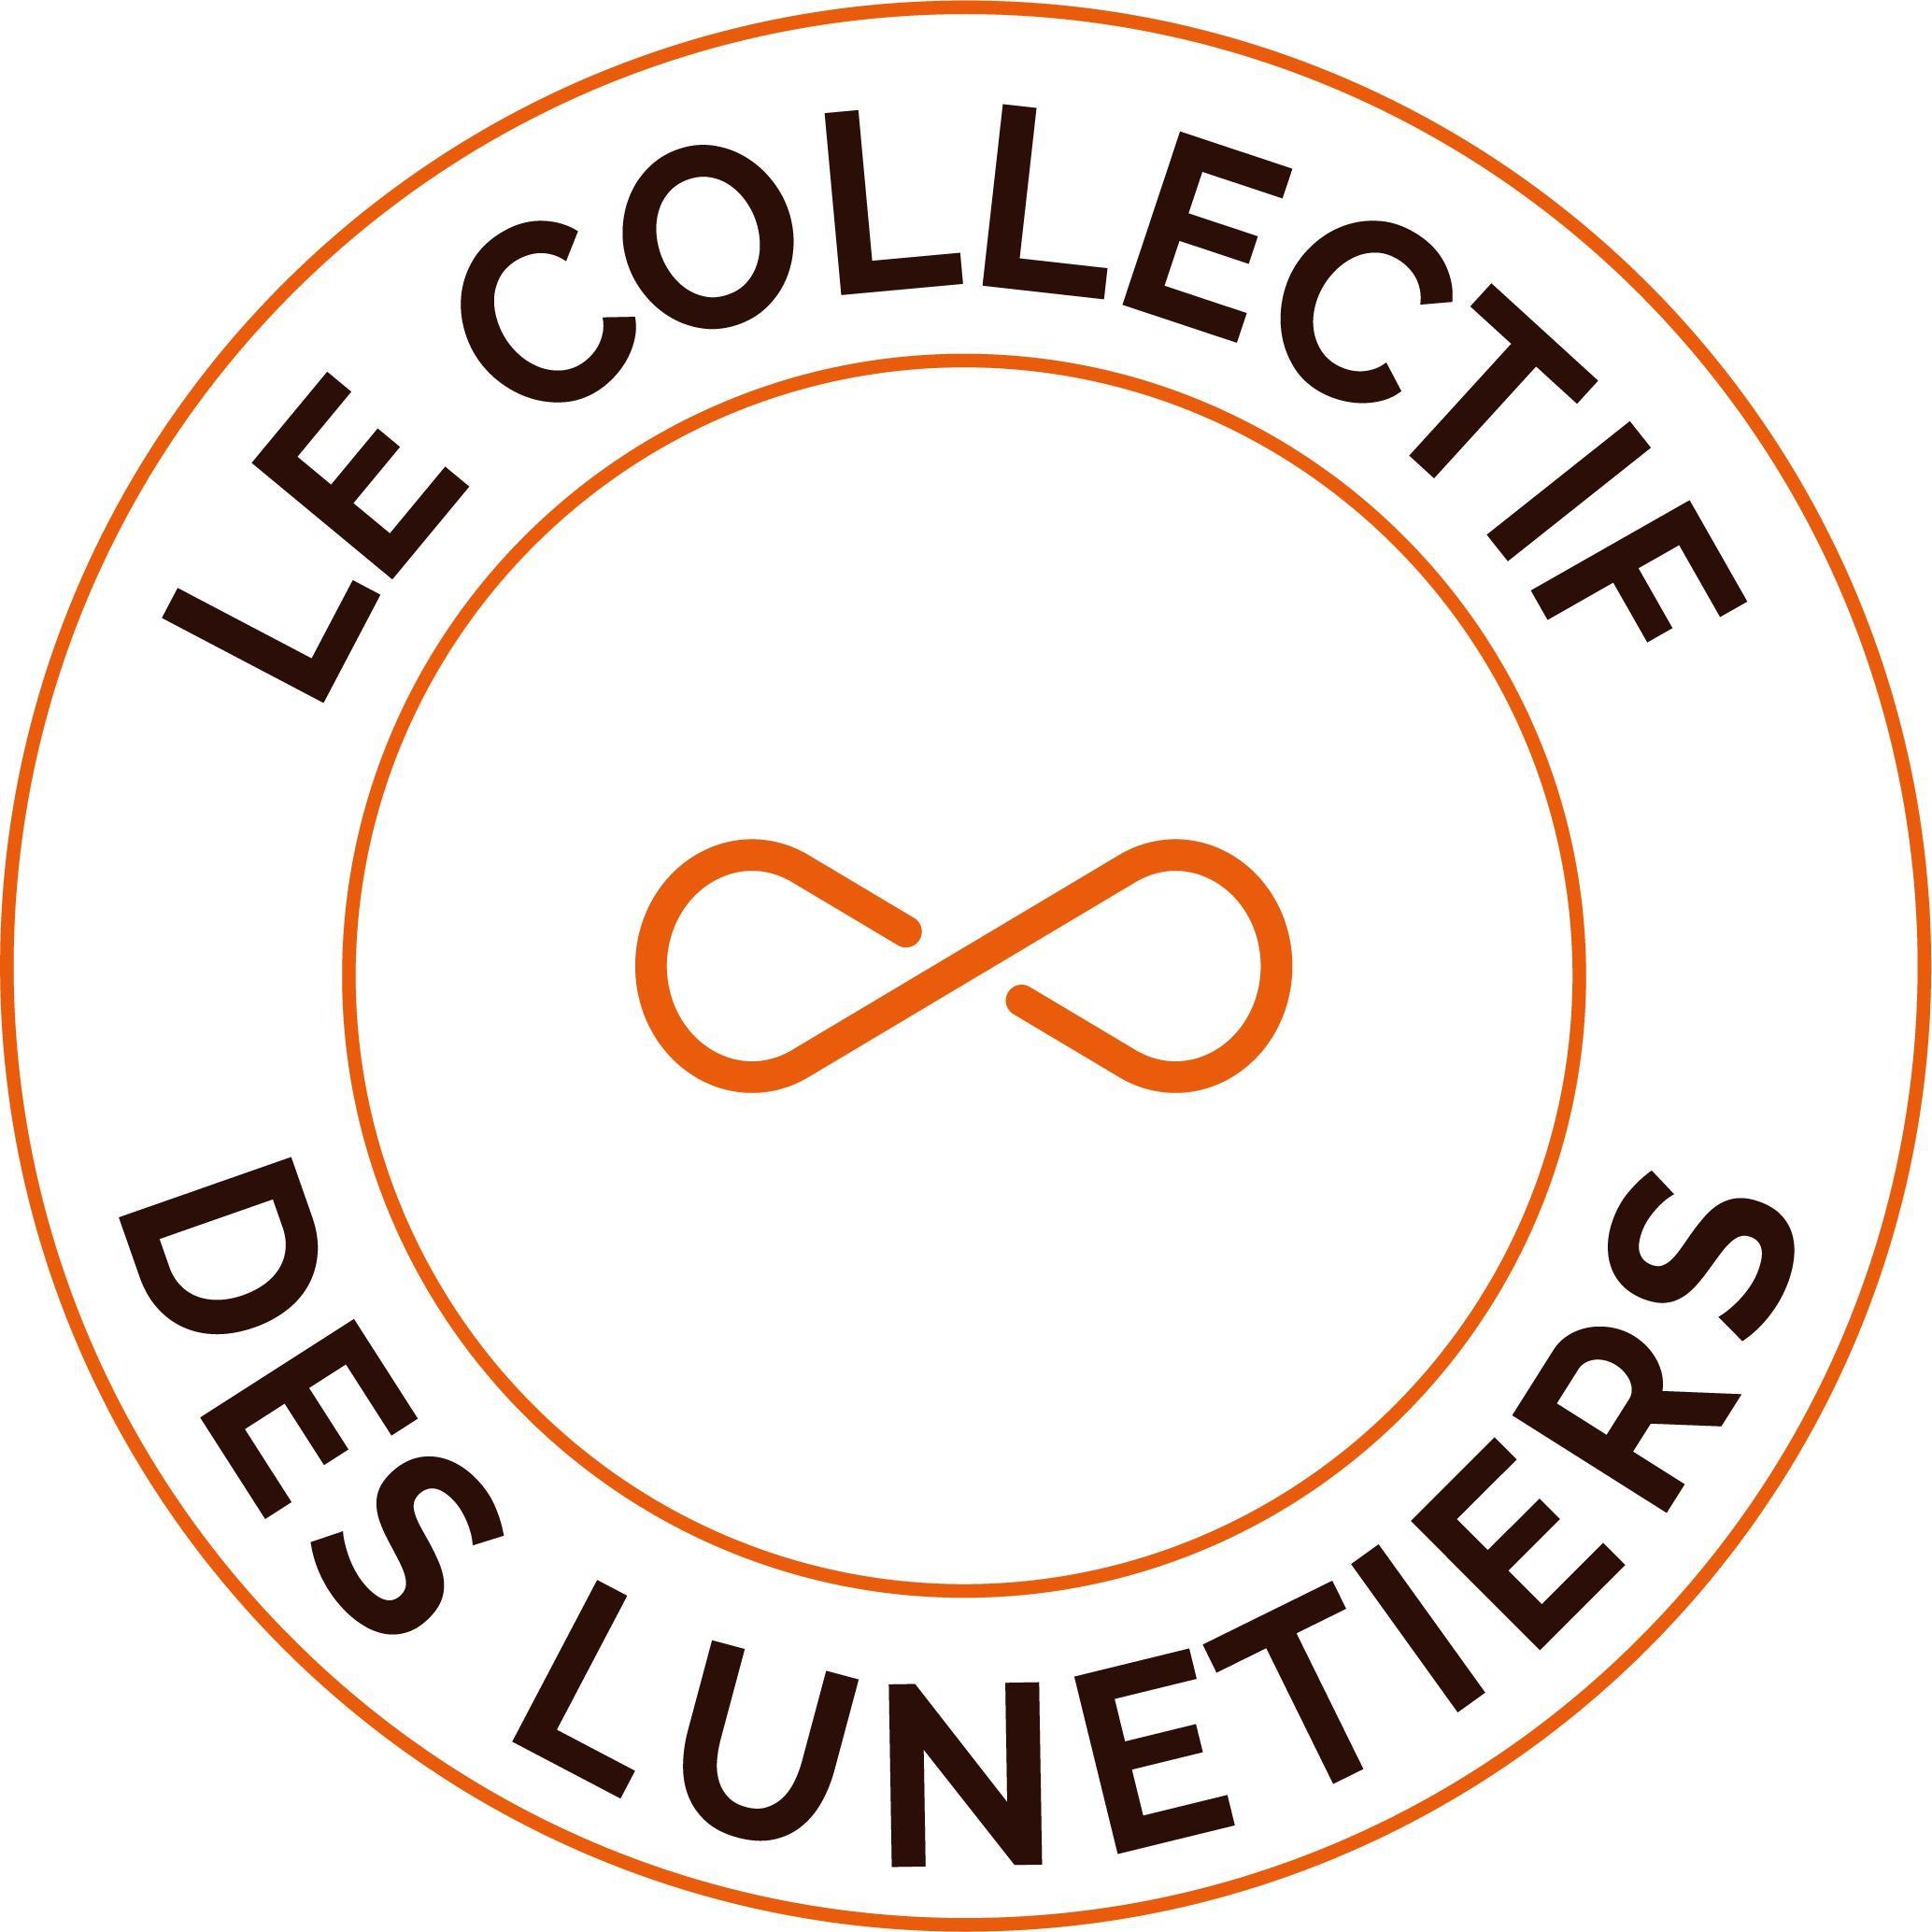 Le Collectif Des Lunetiers Bordeaux